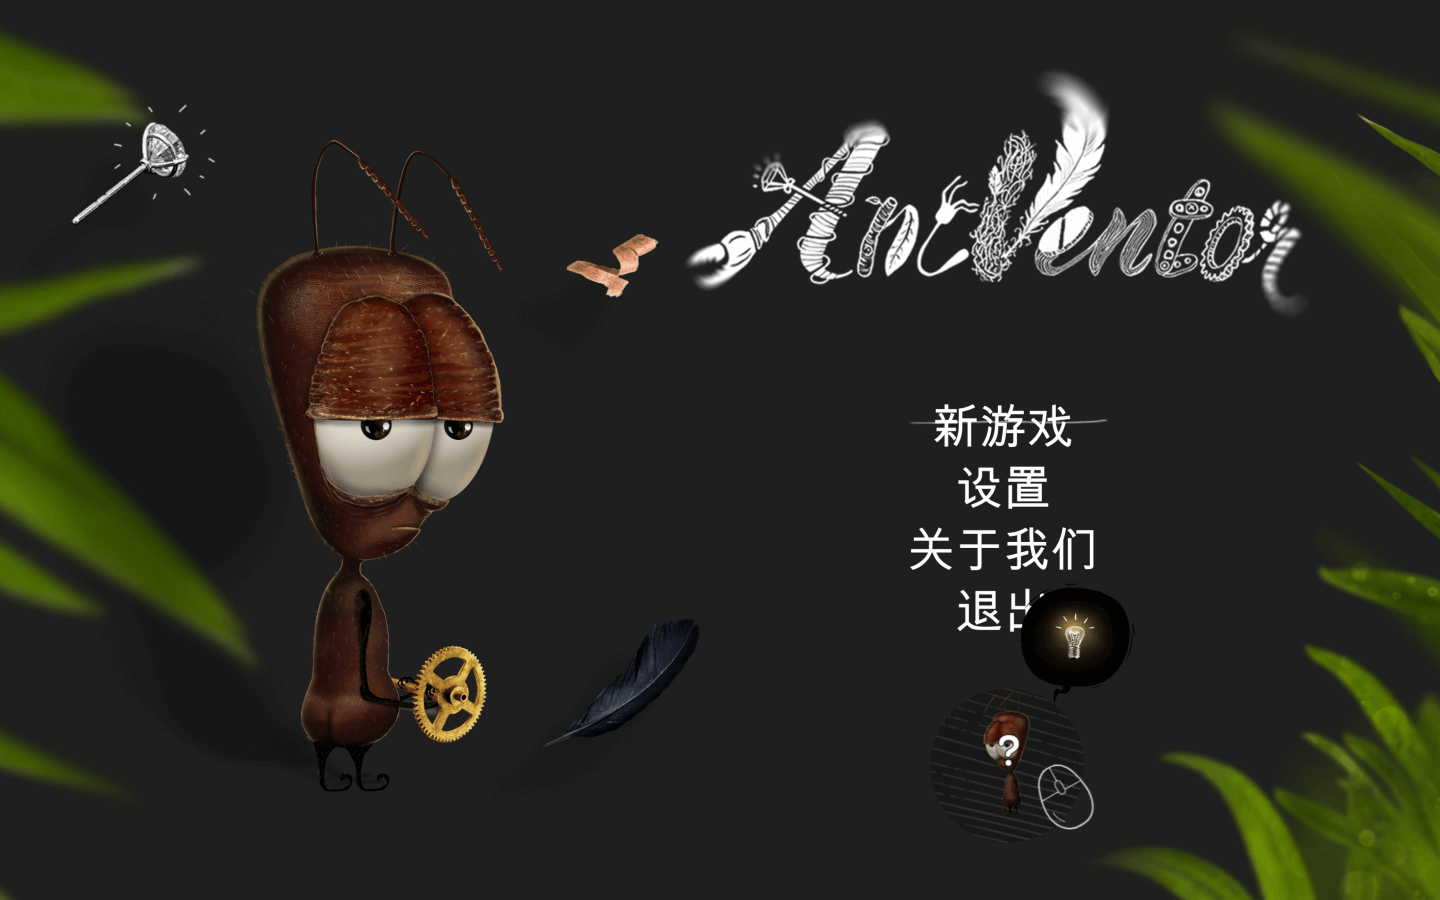 蚂蚁文托 for Mac v1.1.1 AntVentor 中文原生版 苹果电脑